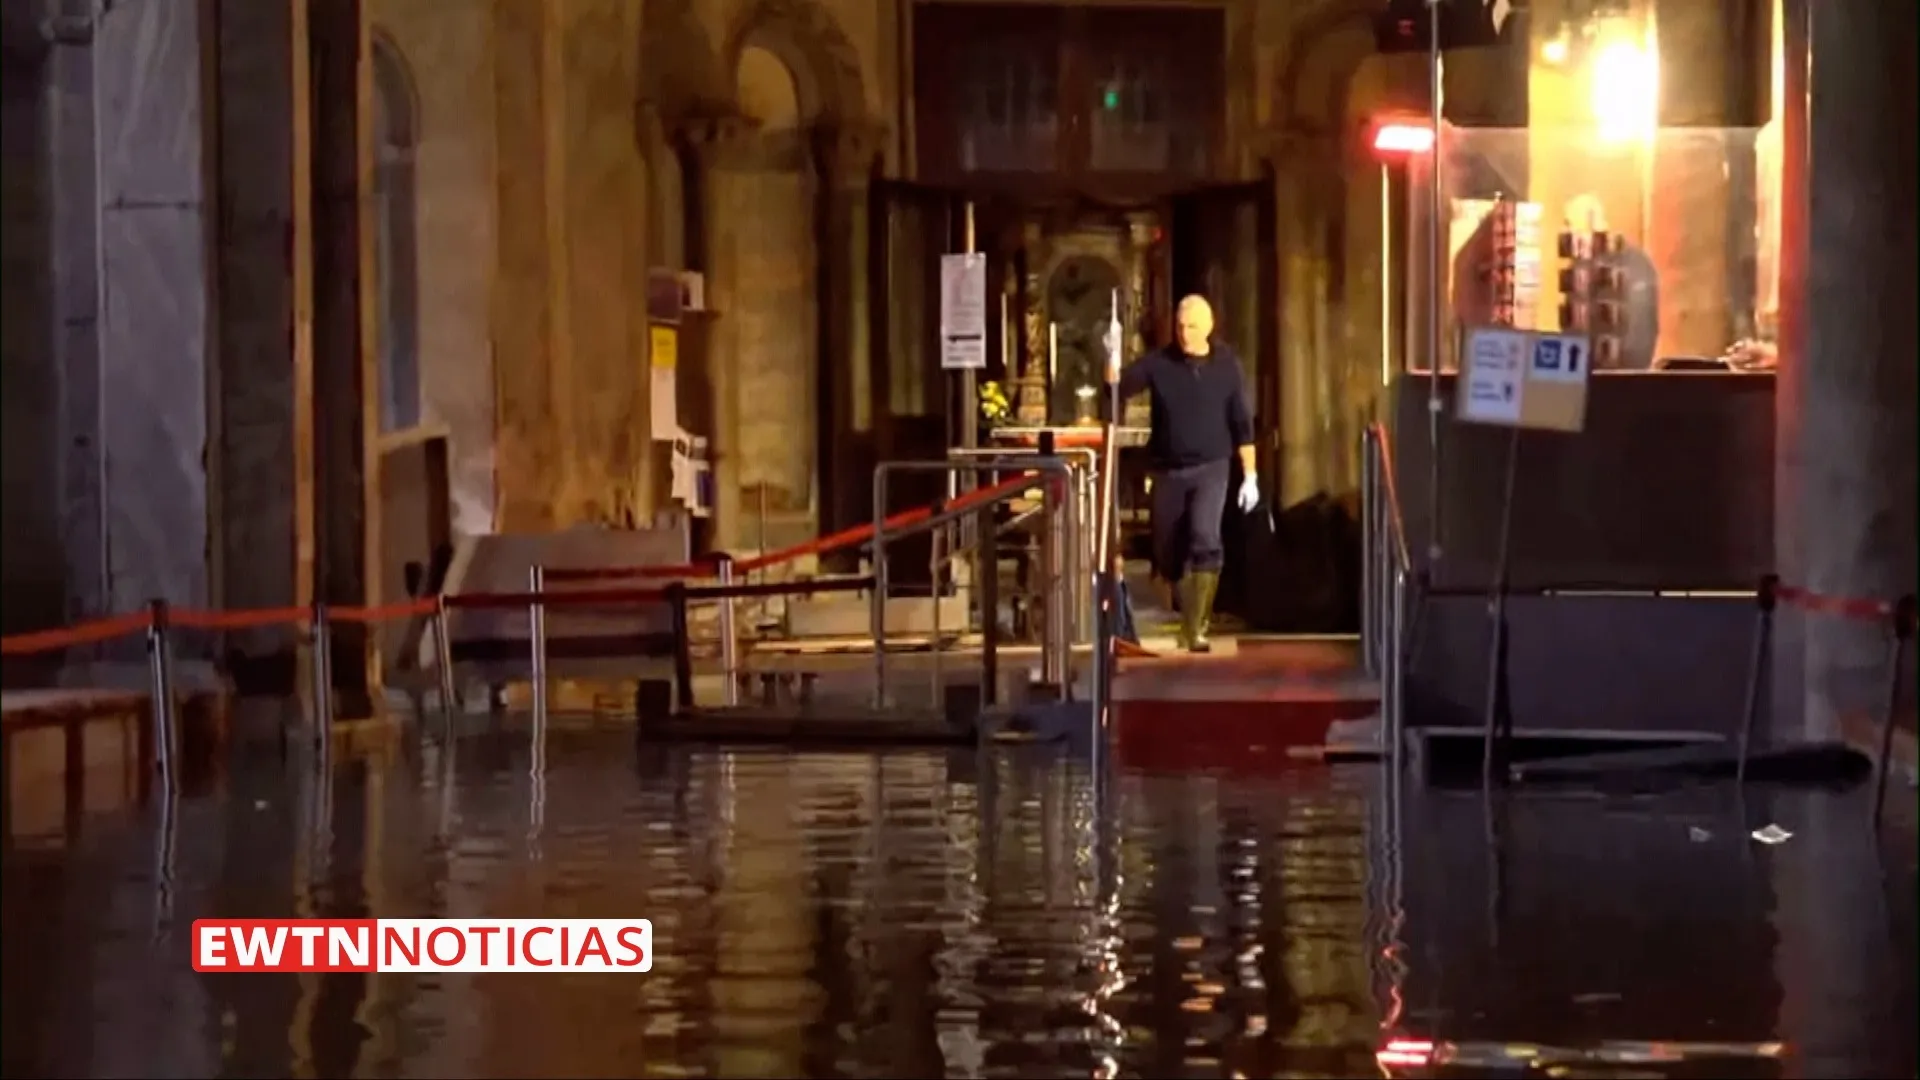 La Basílica de San Marcos inundada. Crédito: EWTN Noticias?w=200&h=150